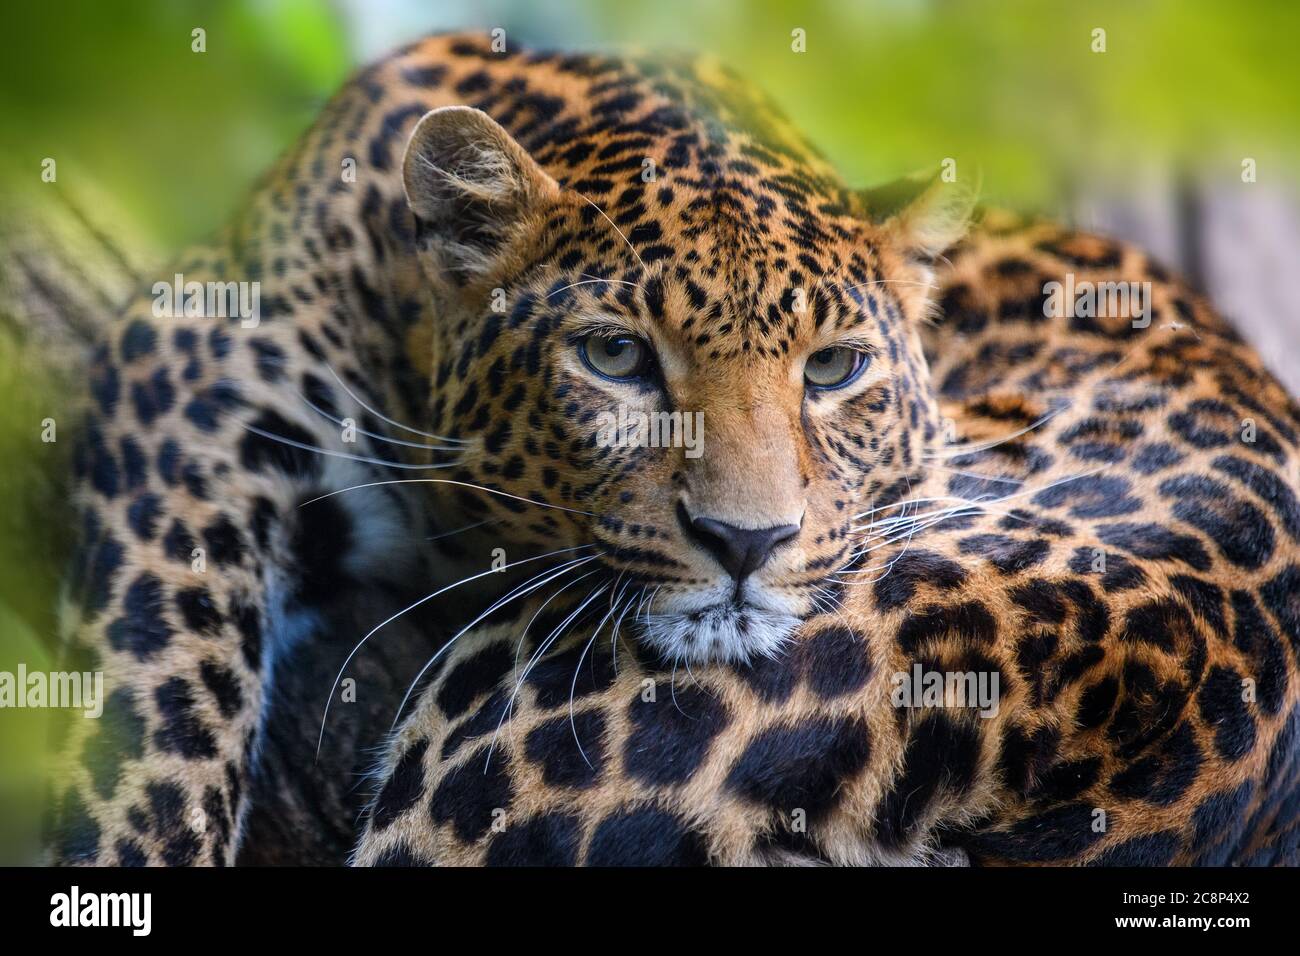 Léopard, animal sauvage dans l'habitat naturel. Grand chat caché dans la forêt Banque D'Images